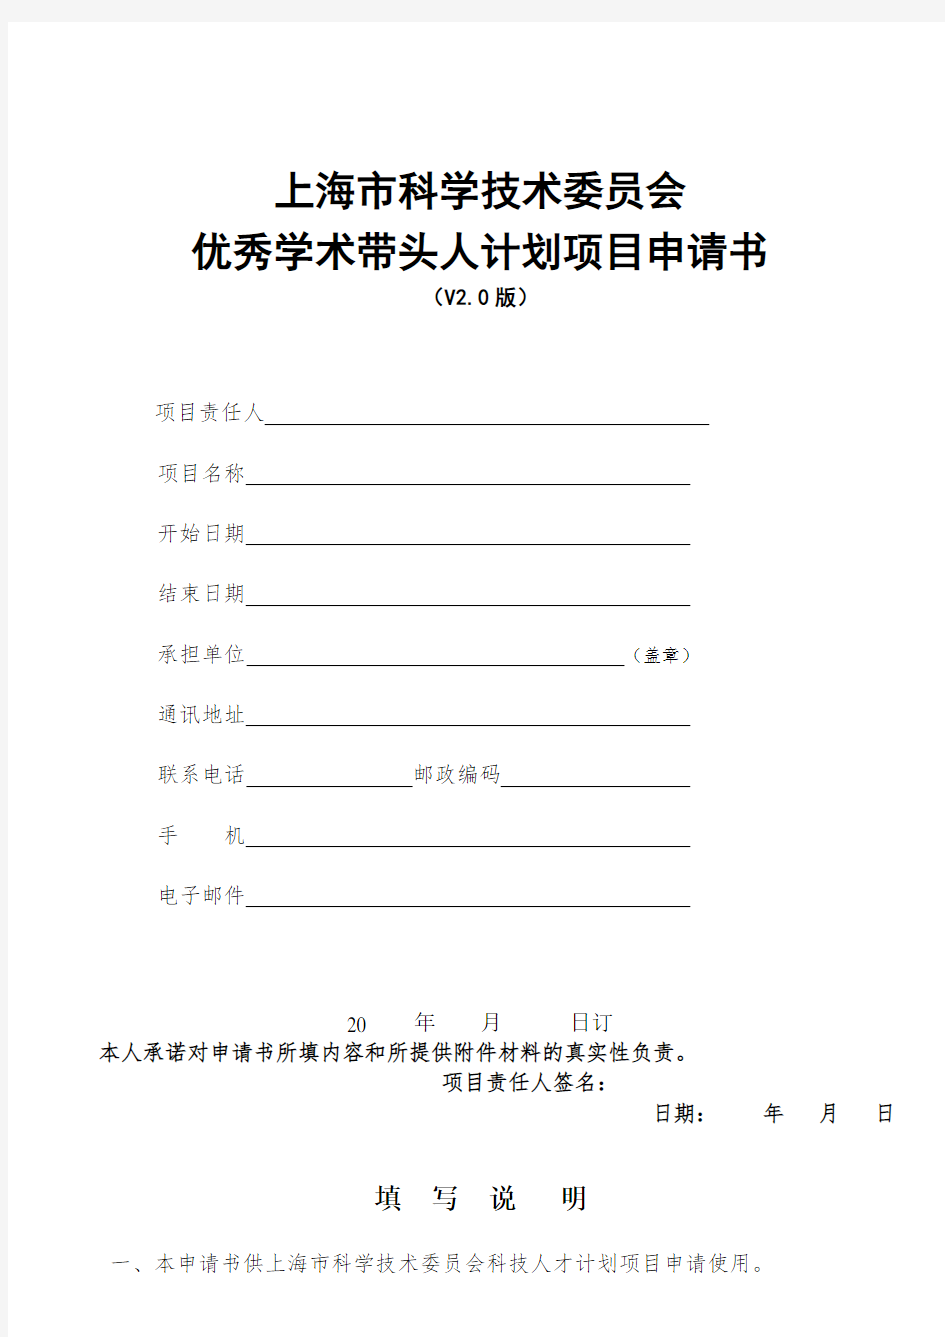 (完整版)整套-上海市科学技术委员会优秀学术带头人计划项目申请书(V2.0版)